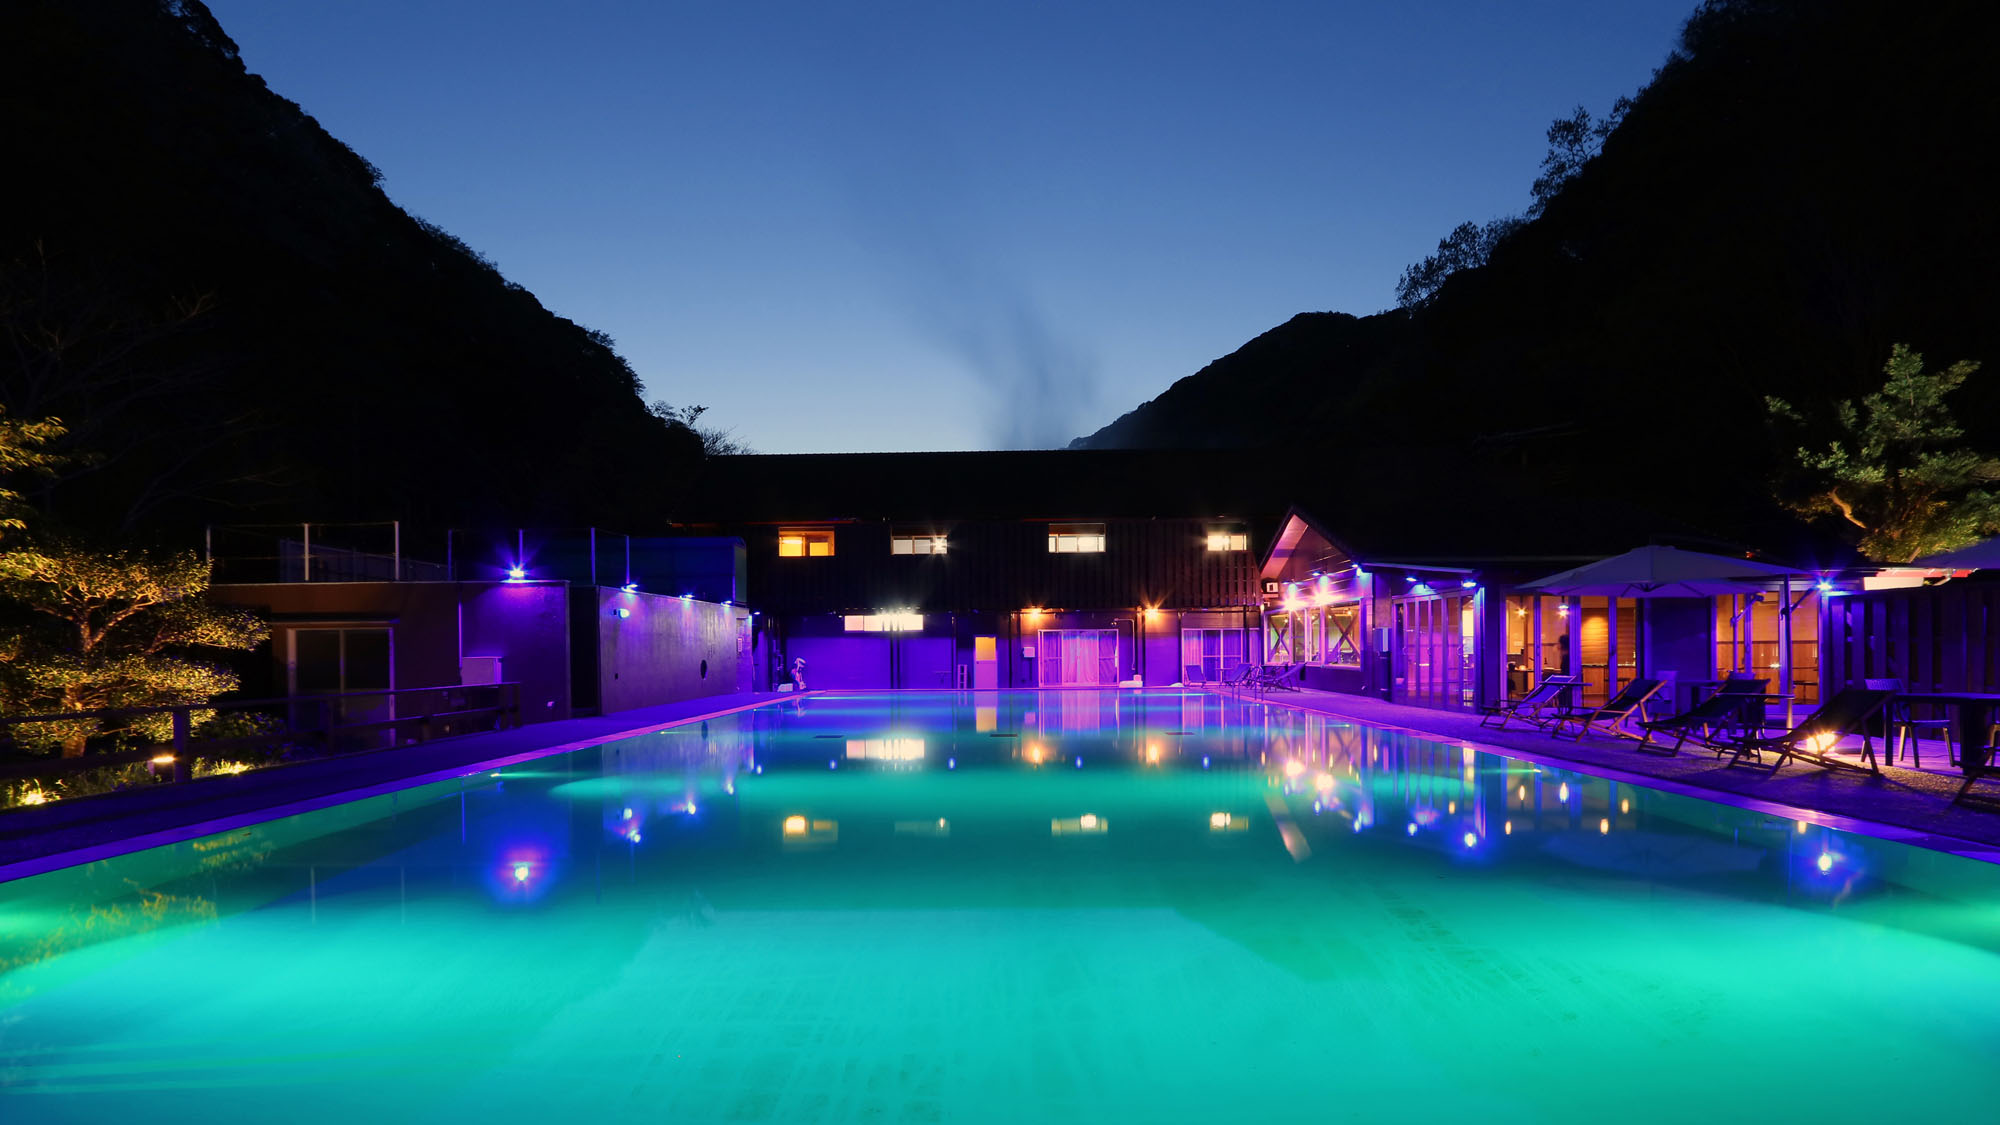 ナイトプール -Night pool-◆ライトアップされた幻想的な景色